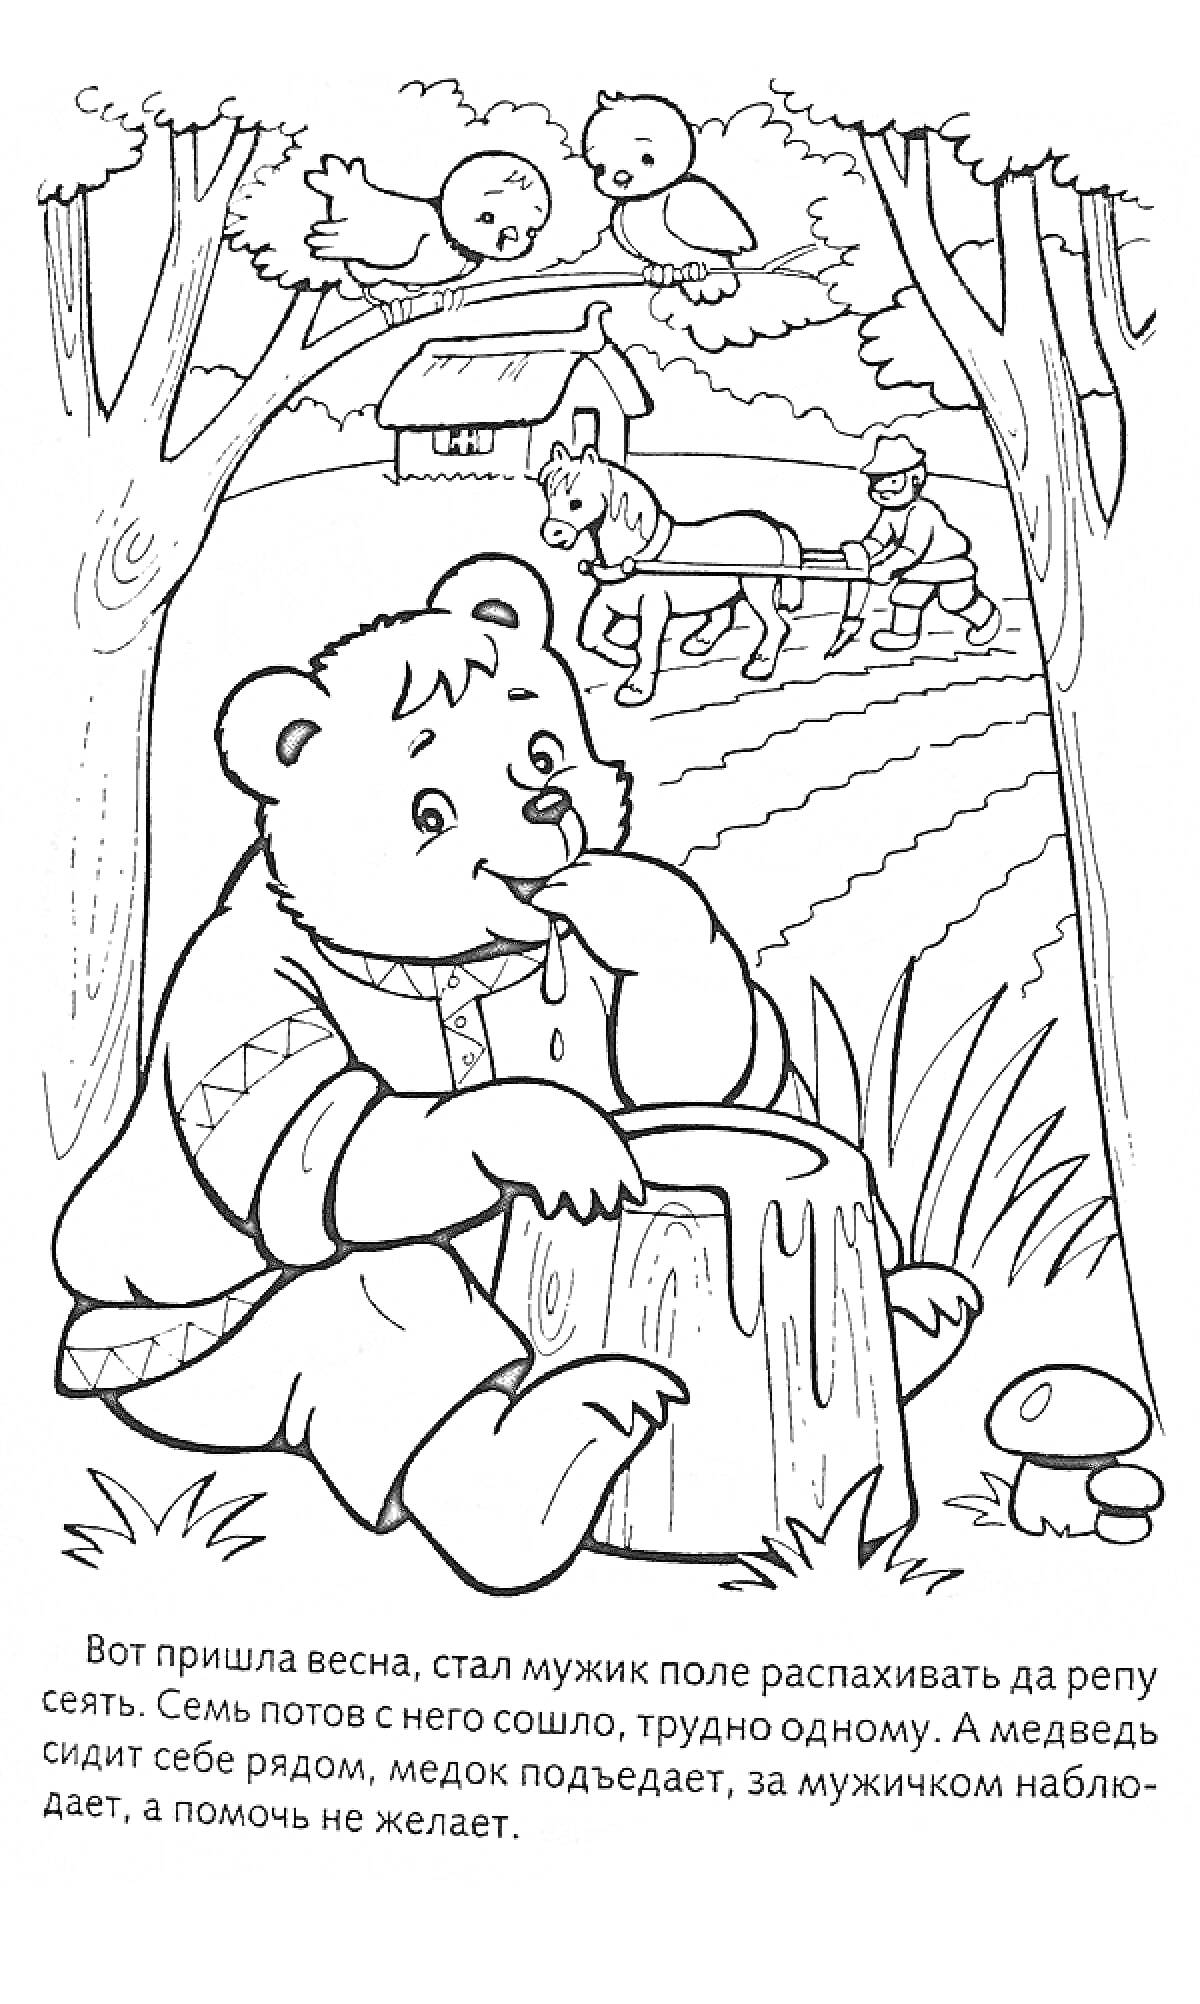 Медведь ест мед на пне, мужик пашет поле с лошадьми, дерево, птички, грибы